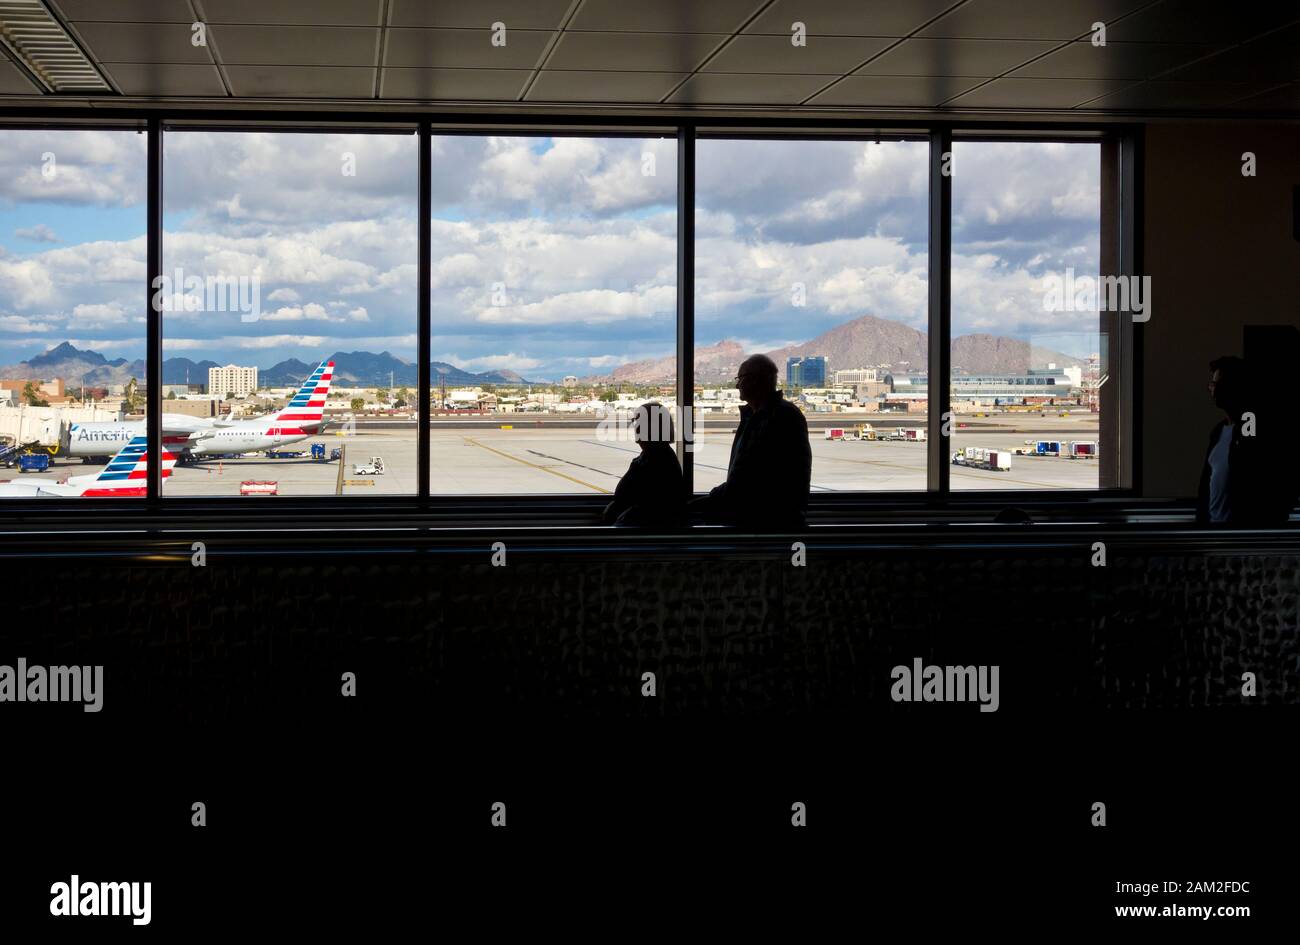 Flughafen Phoenix Sky Harbor mit Blick auf die Flugzeuge und den Asphalt sowie Reisende auf dem Flughafen. Stockfoto